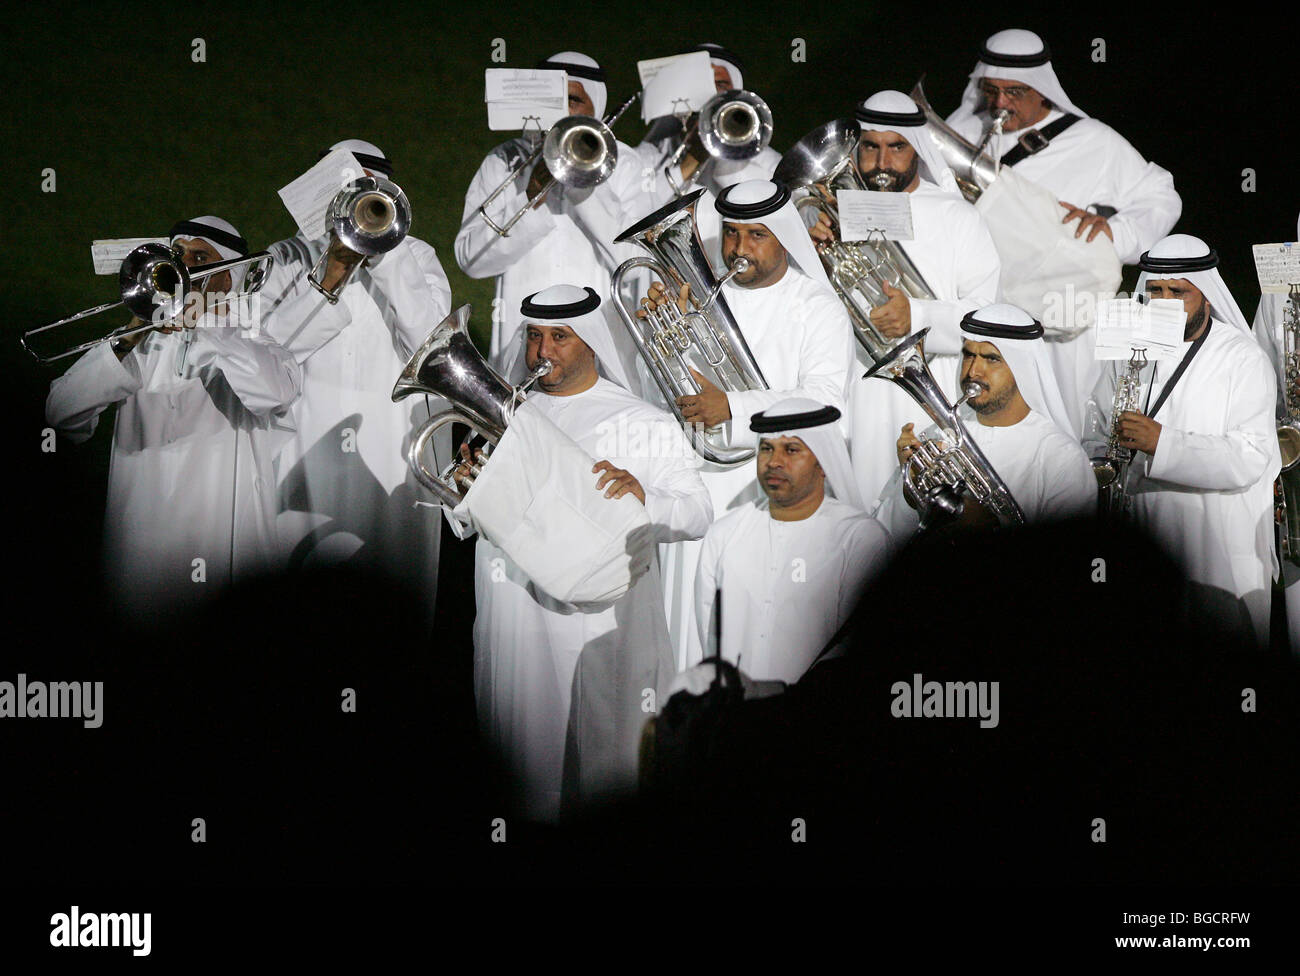 Orchestre de cuivres à l'Hippodrome de Nad Al Sheba à Dubaï, Émirats Arabes Unis Banque D'Images